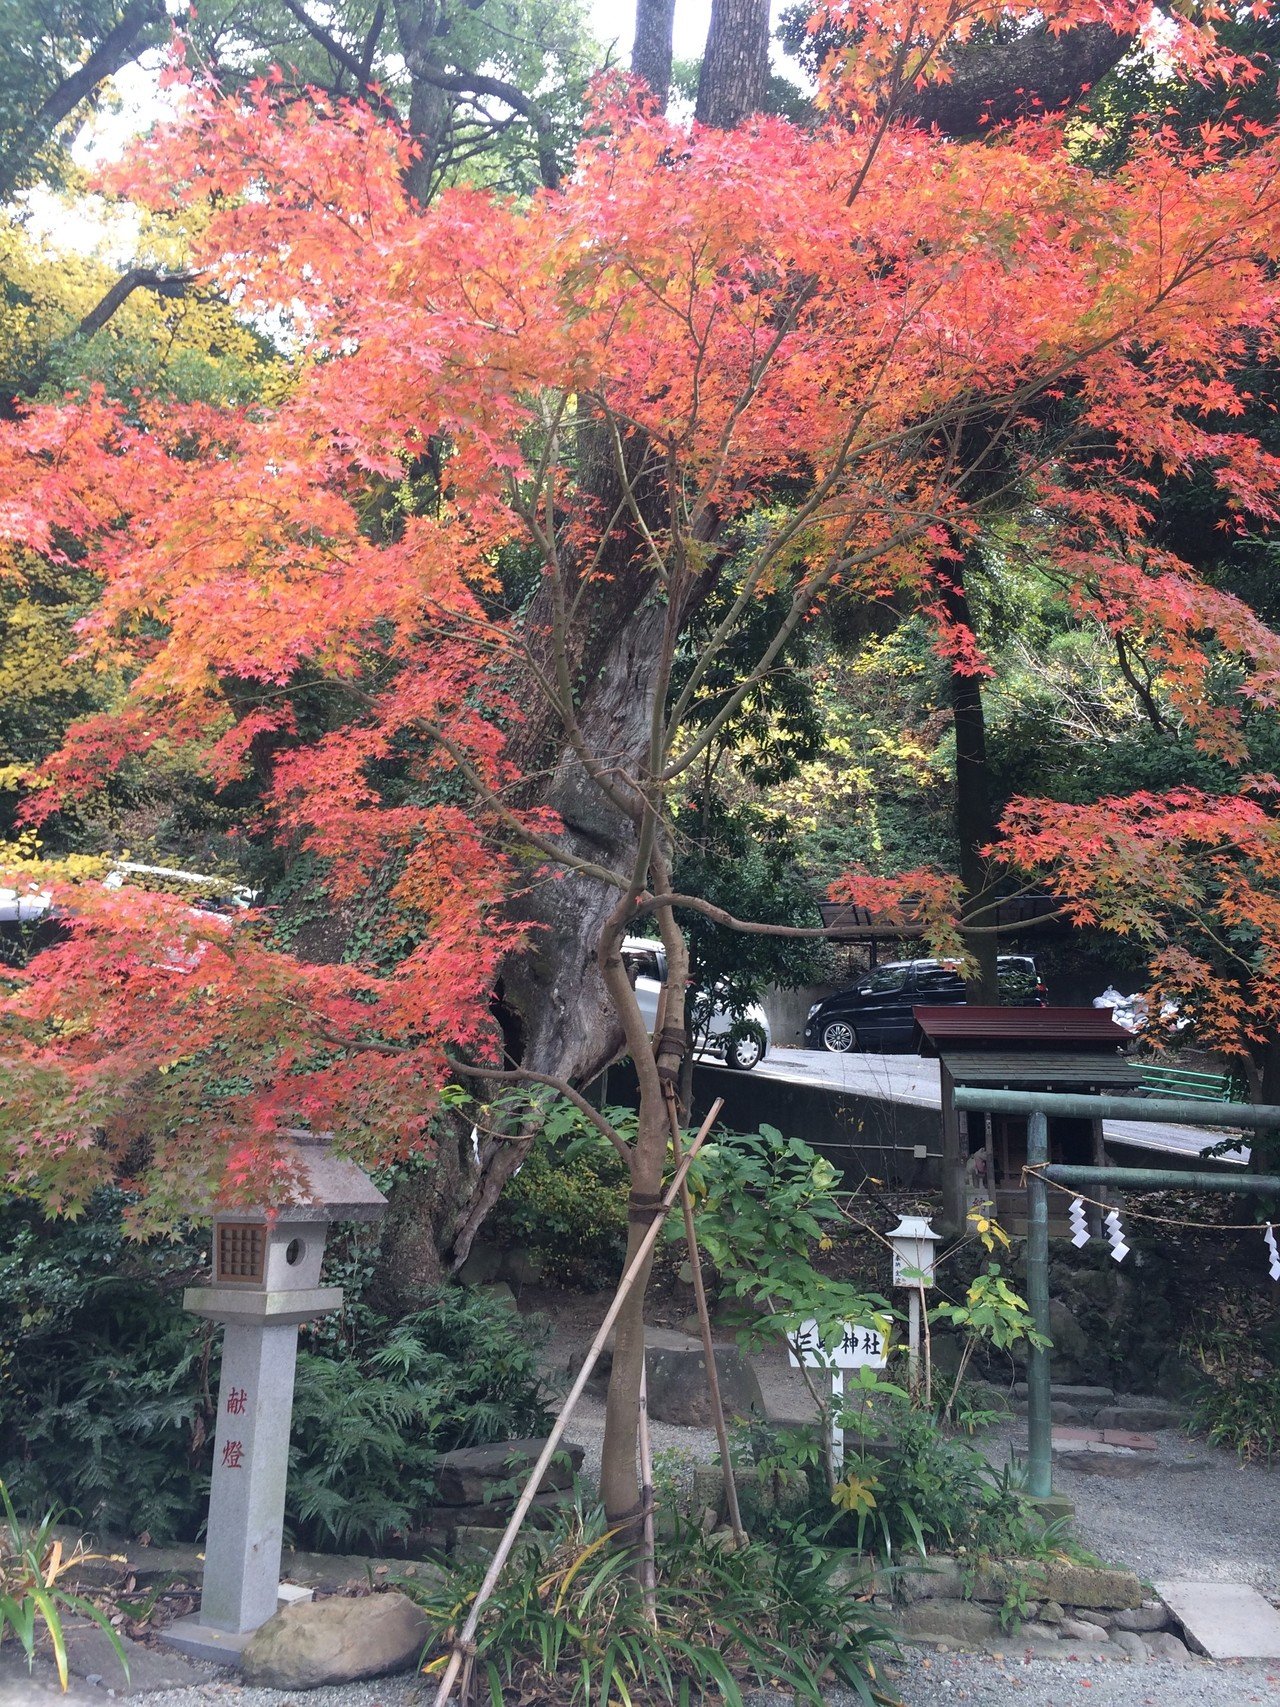 紅葉 お昼休みな方たちも多いかと思います 成田山公園の紅葉で一息ついてくださいませ ヴィアナ 沙織 I 取材率アップコンサルタント Note